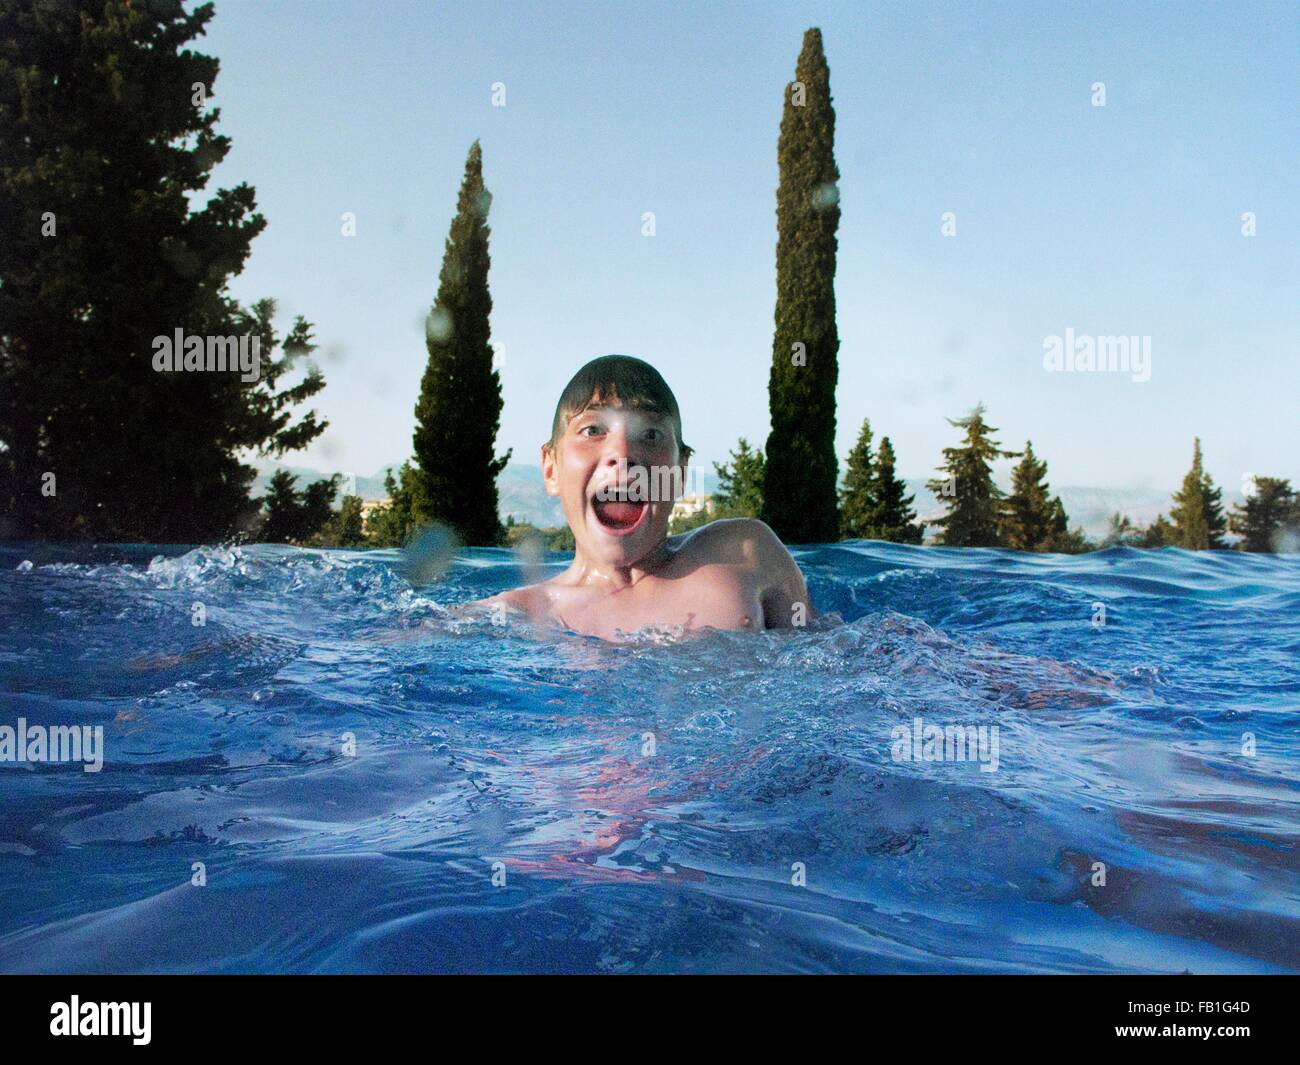 Divertido retrato de adolescente en la piscina al aire libre Foto de stock